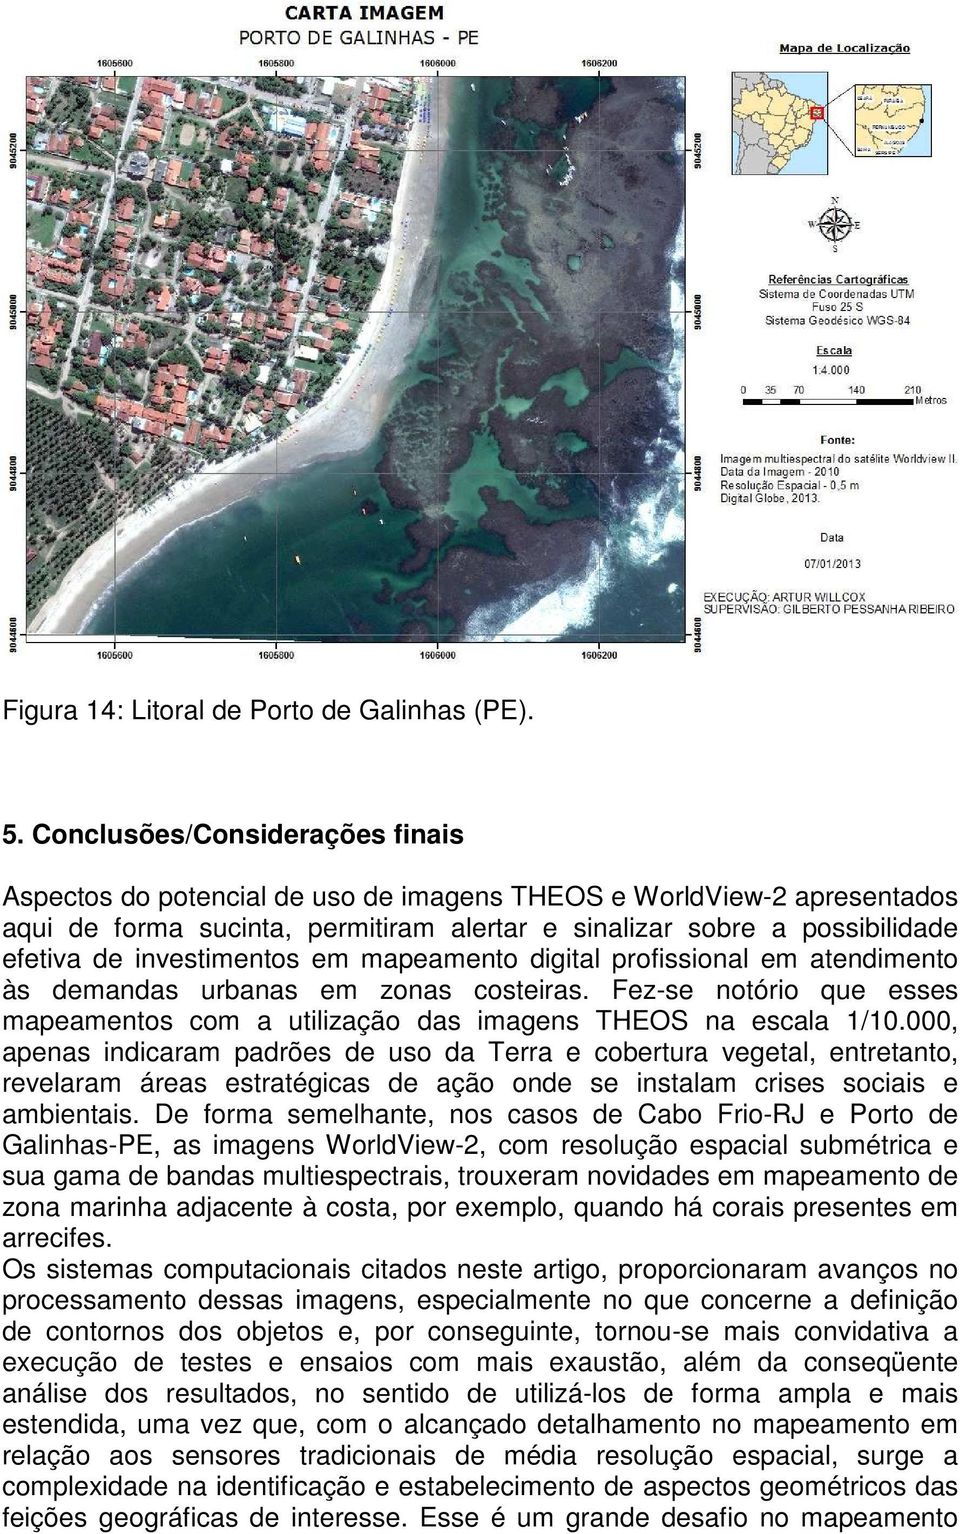 investimentos em mapeamento digital profissional em atendimento às demandas urbanas em zonas costeiras. Fez-se notório que esses mapeamentos com a utilização das imagens THEOS na escala 1/10.